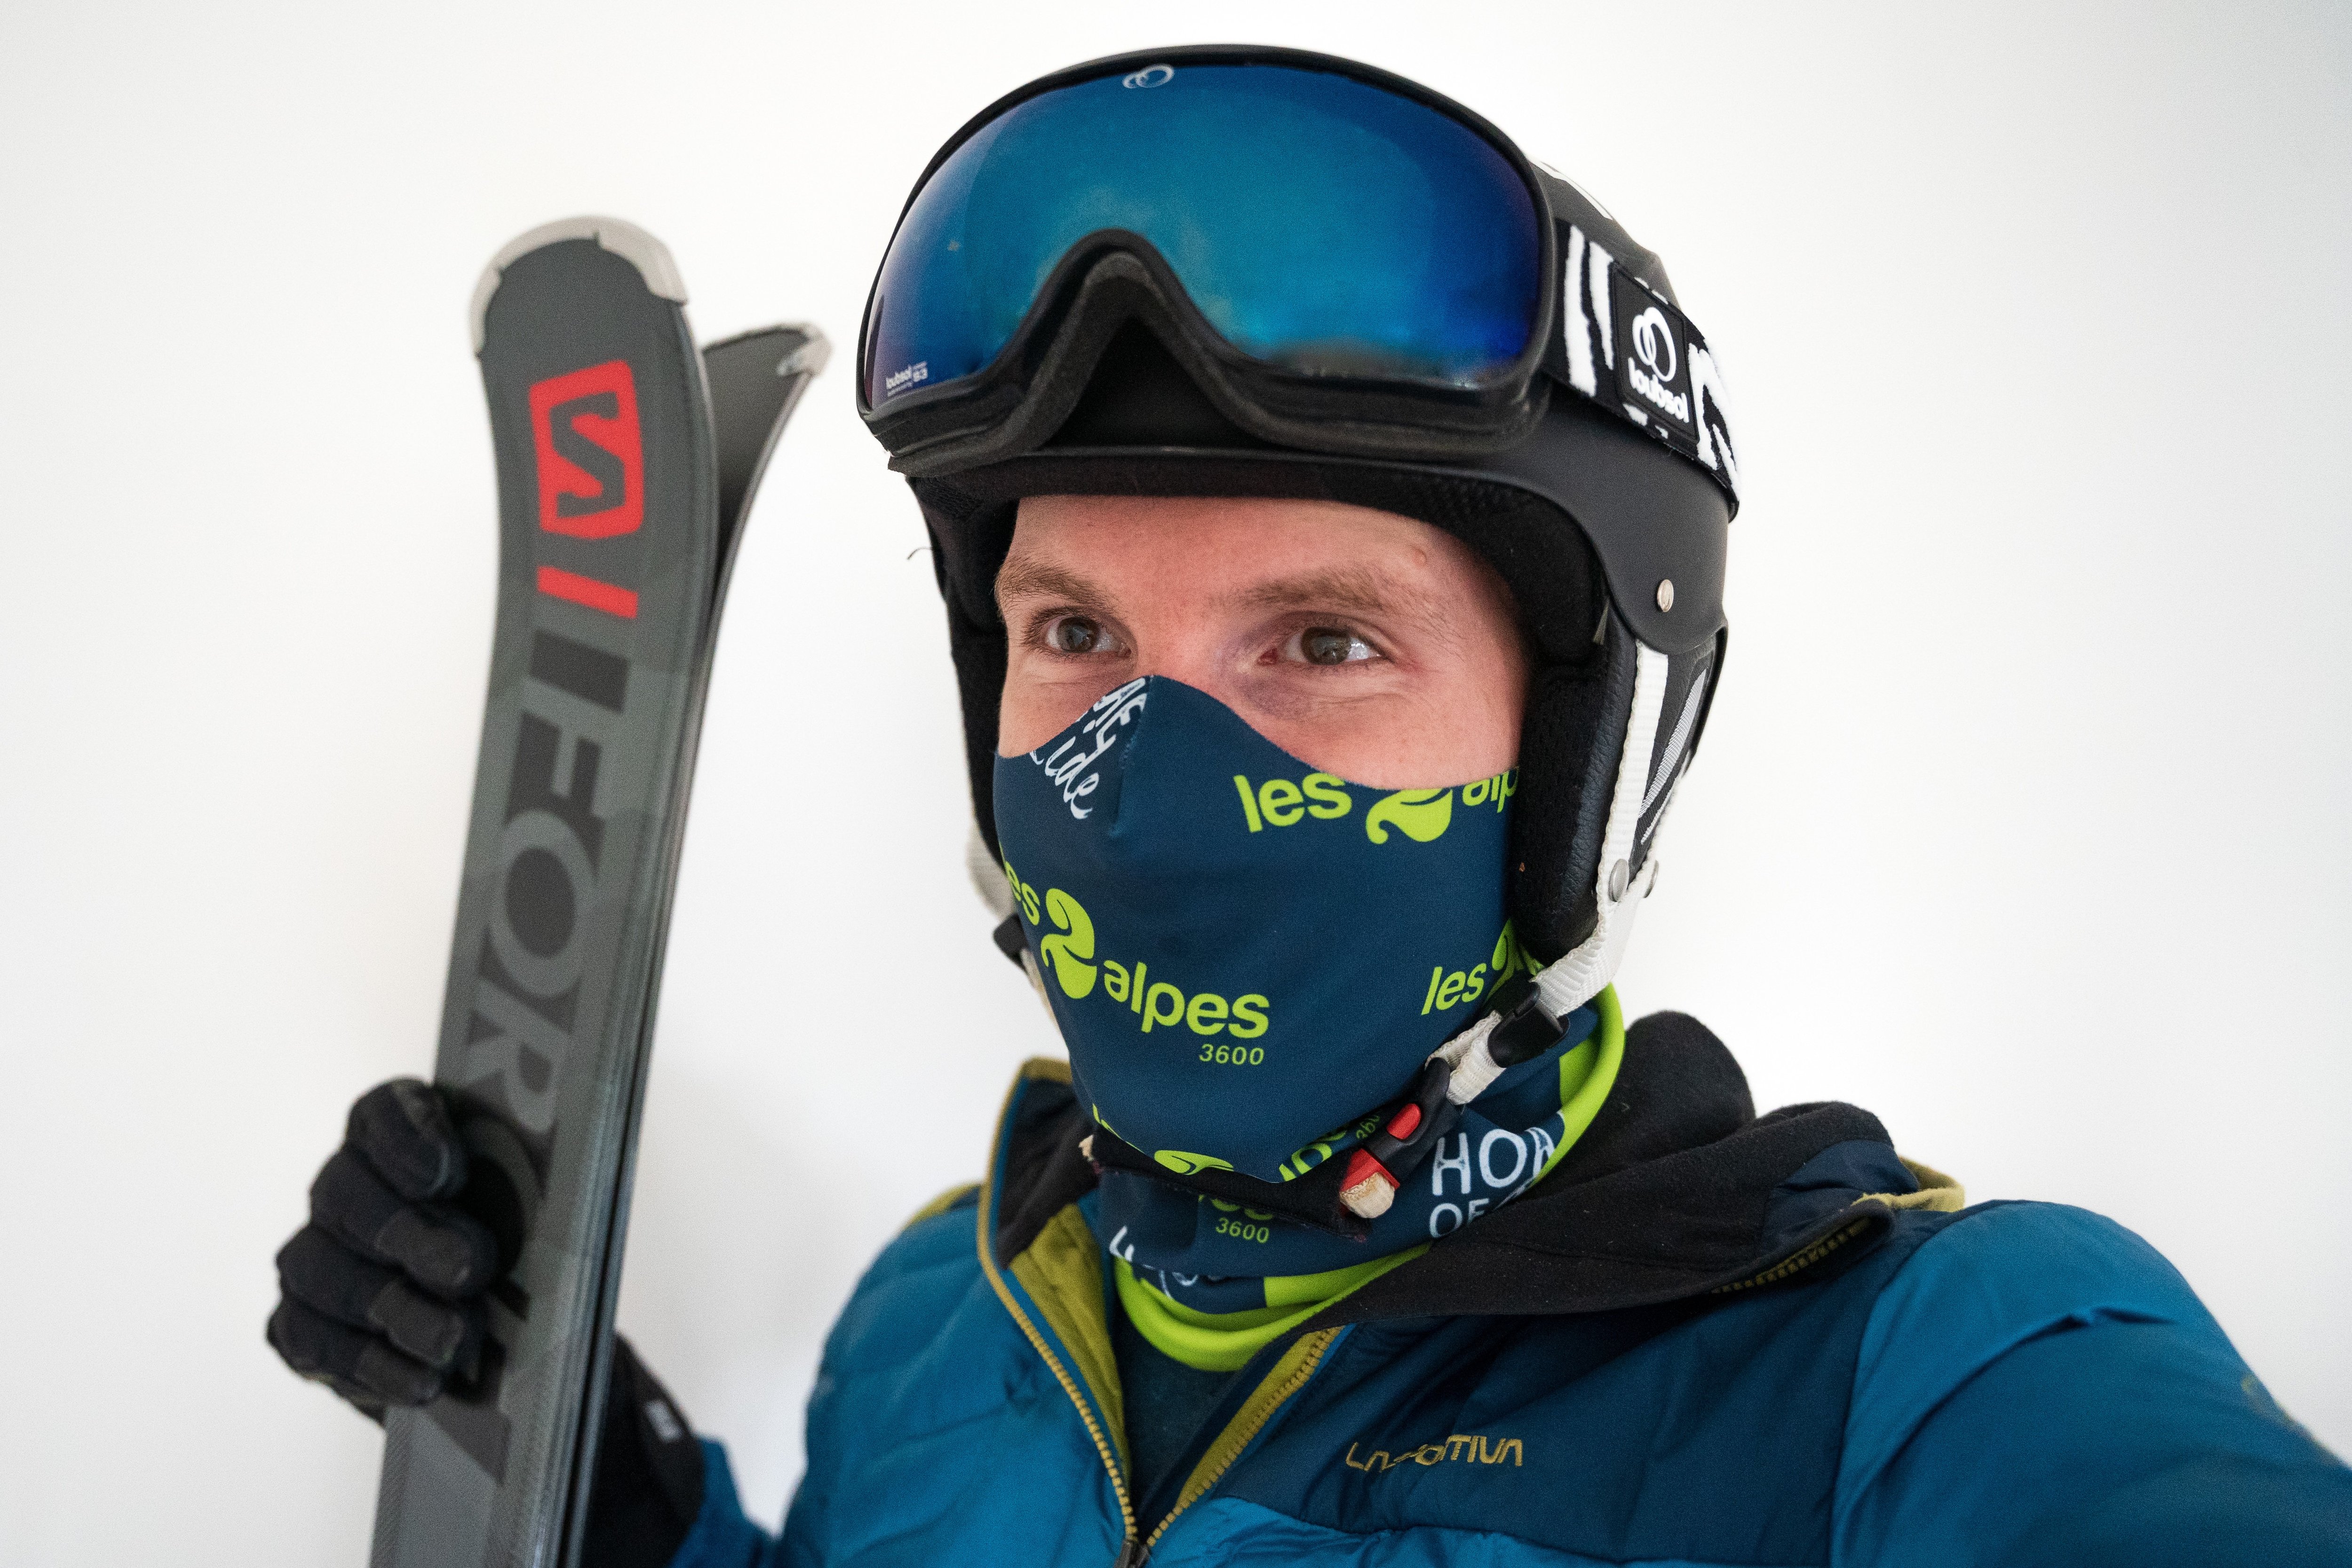 Tour de cou pour le ski : ce que disent les recommandations AFNOR